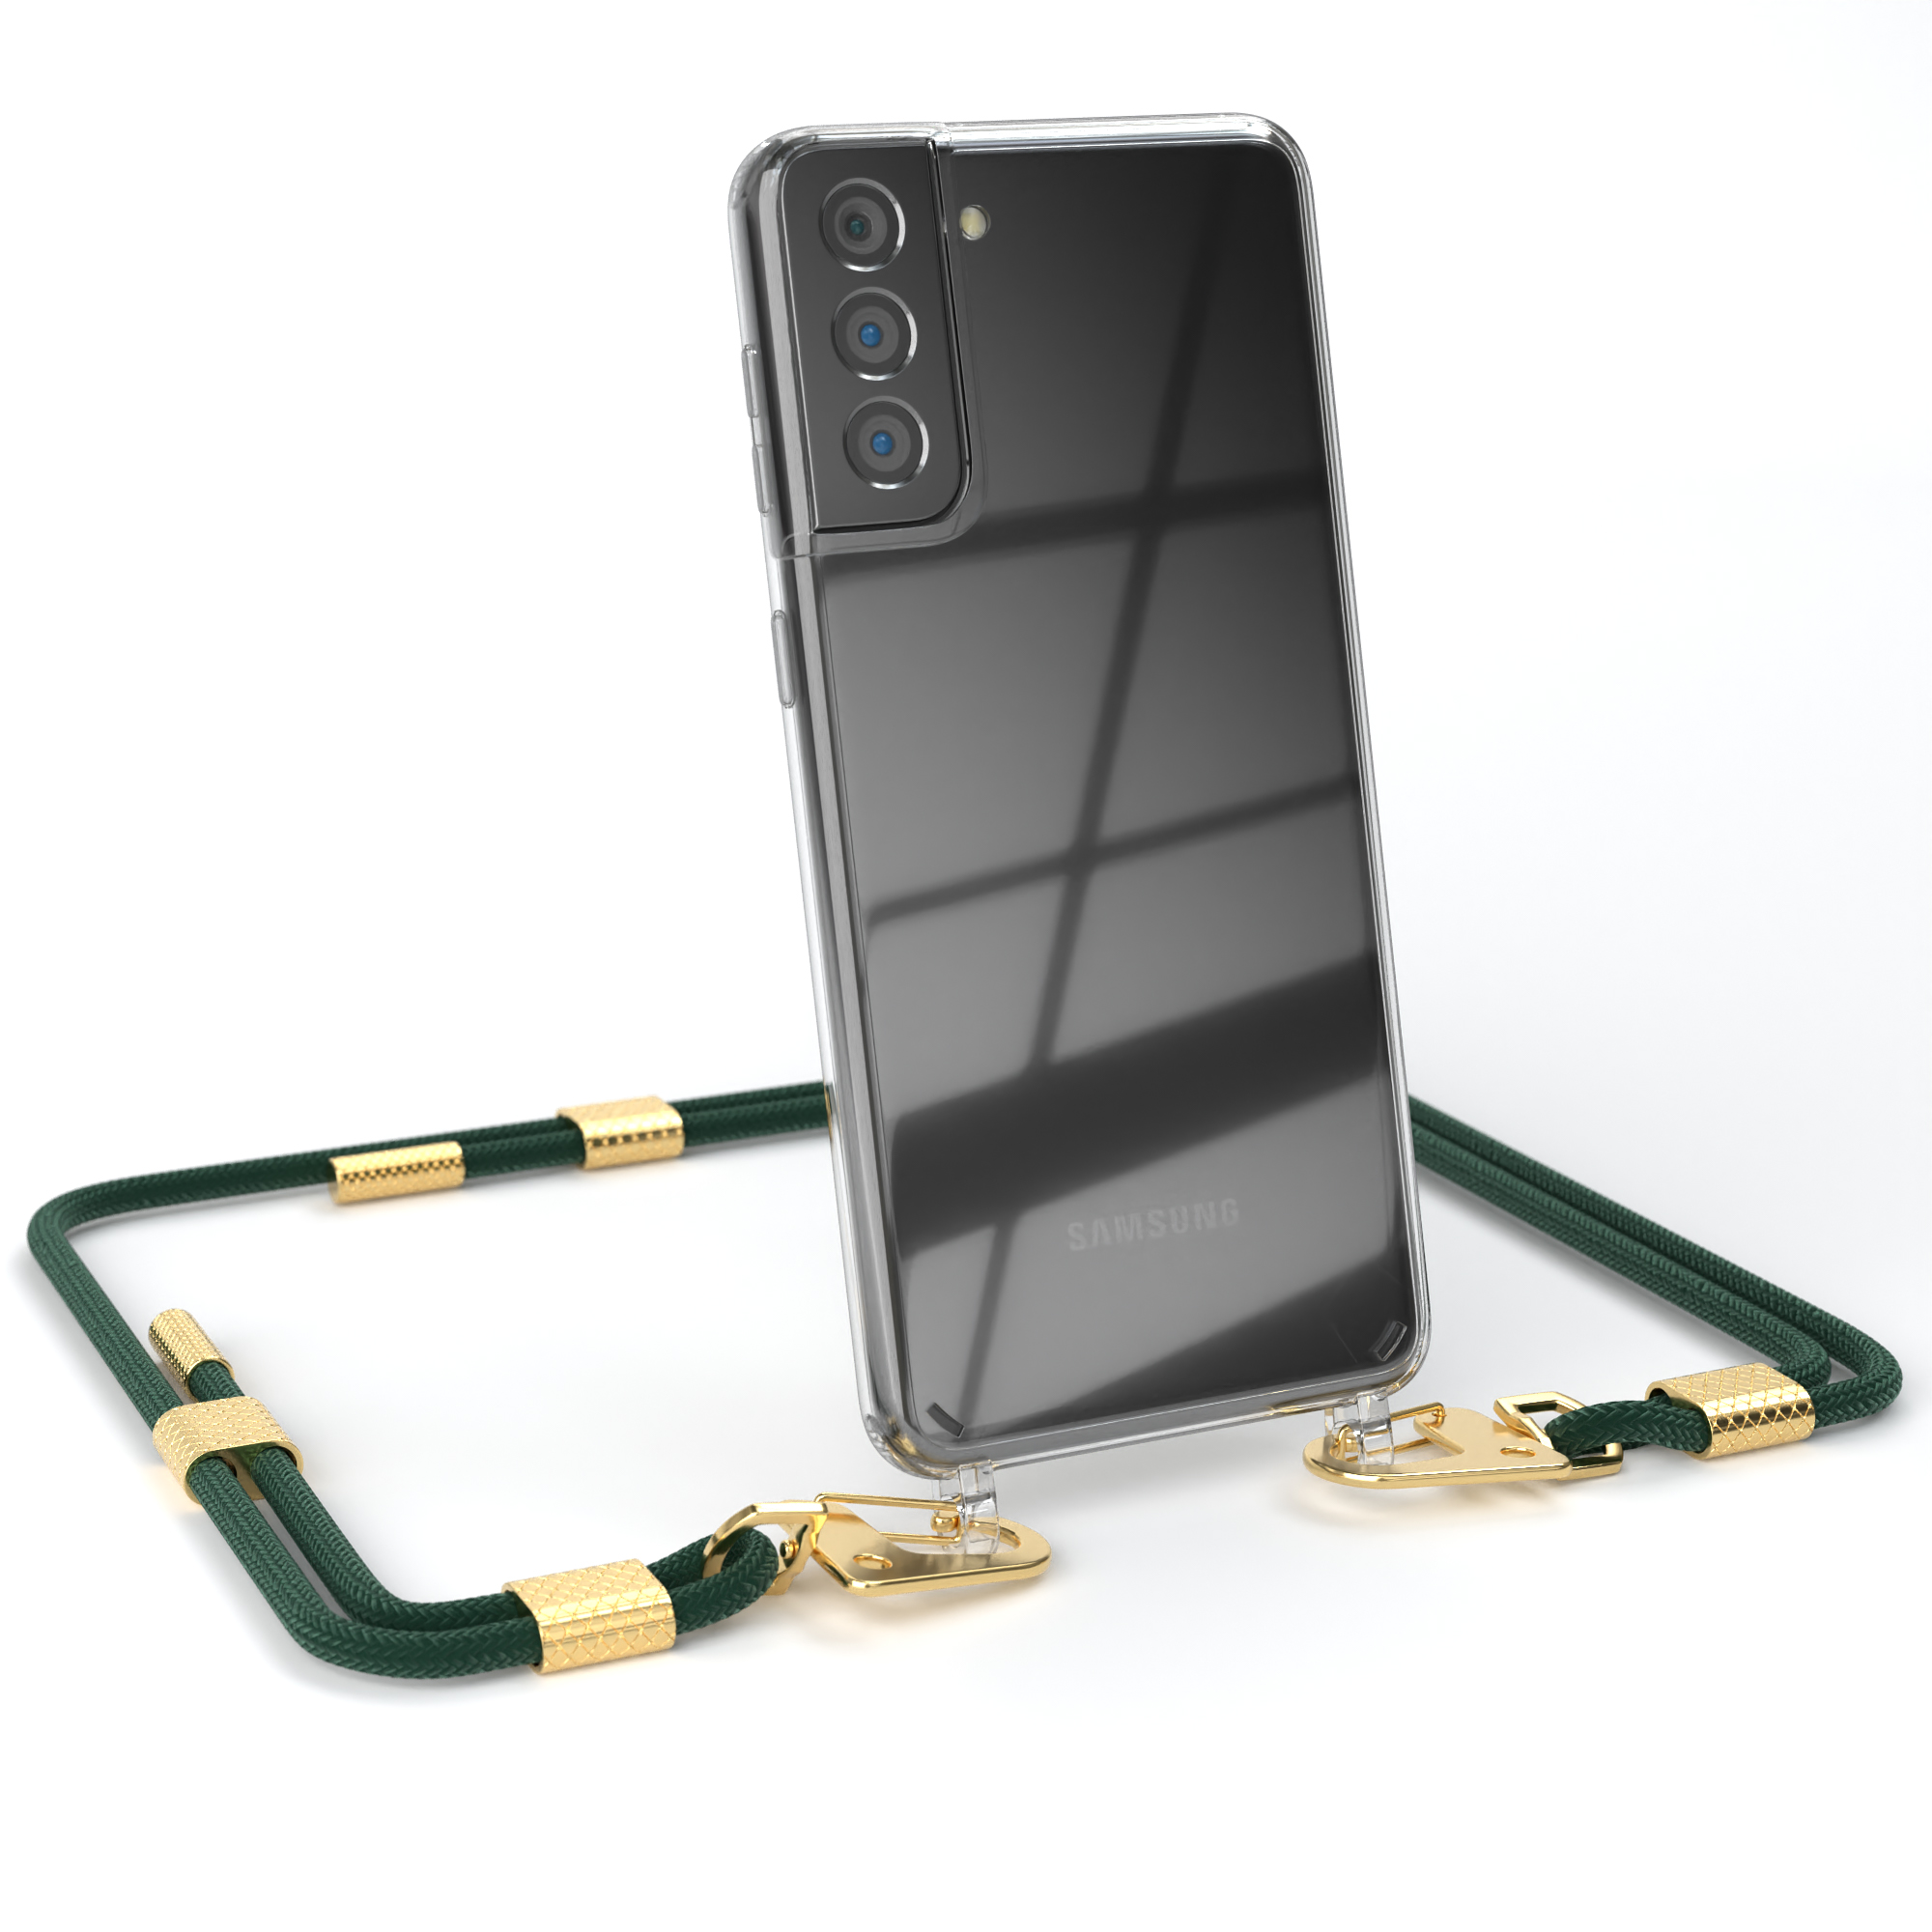 EAZY CASE Transparente Handyhülle mit 5G, Umhängetasche, Kordel Gold / Samsung, S21 + Galaxy runder Nachtgrün Karabiner, Plus